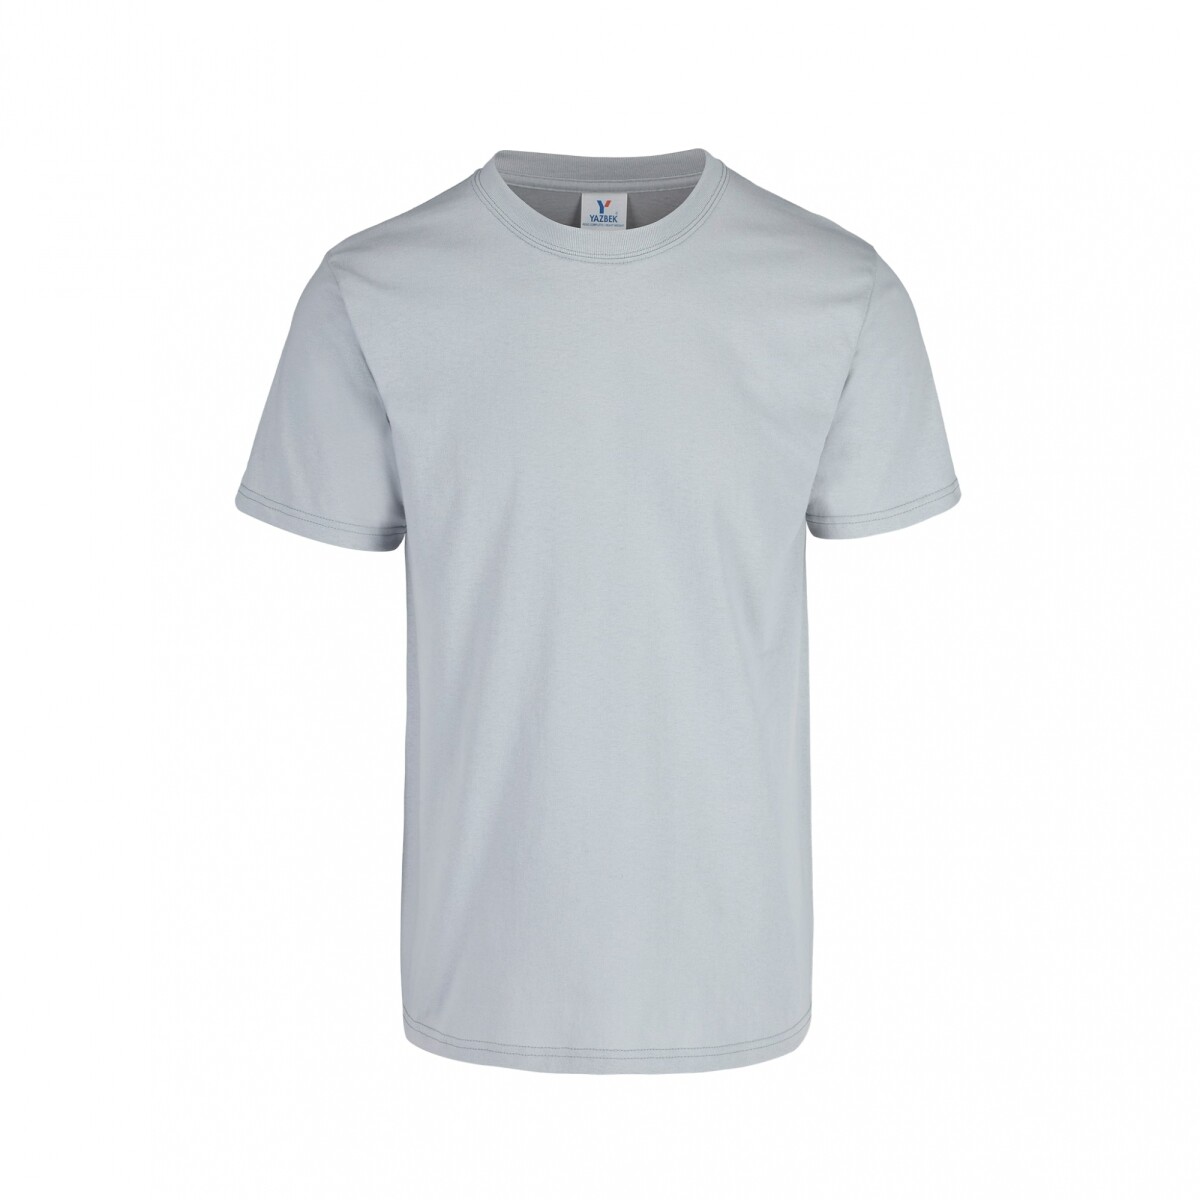 Camiseta a la base peso completo - Plata 